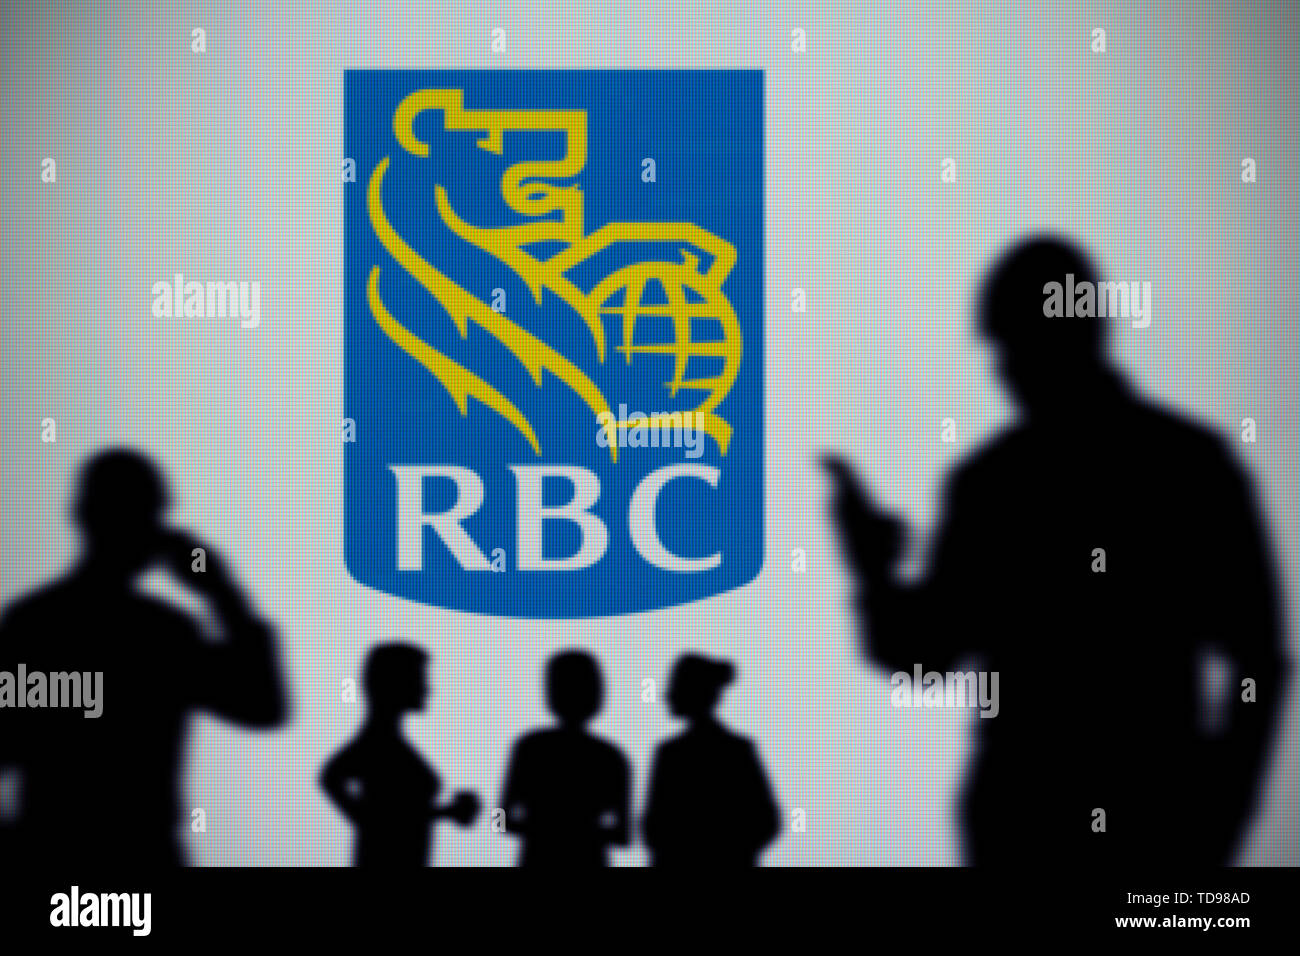 RBC Royal Bank logo è visibile su uno schermo a LED in background mentre si profila una persona utilizza uno smartphone (solo uso editoriale) Foto Stock